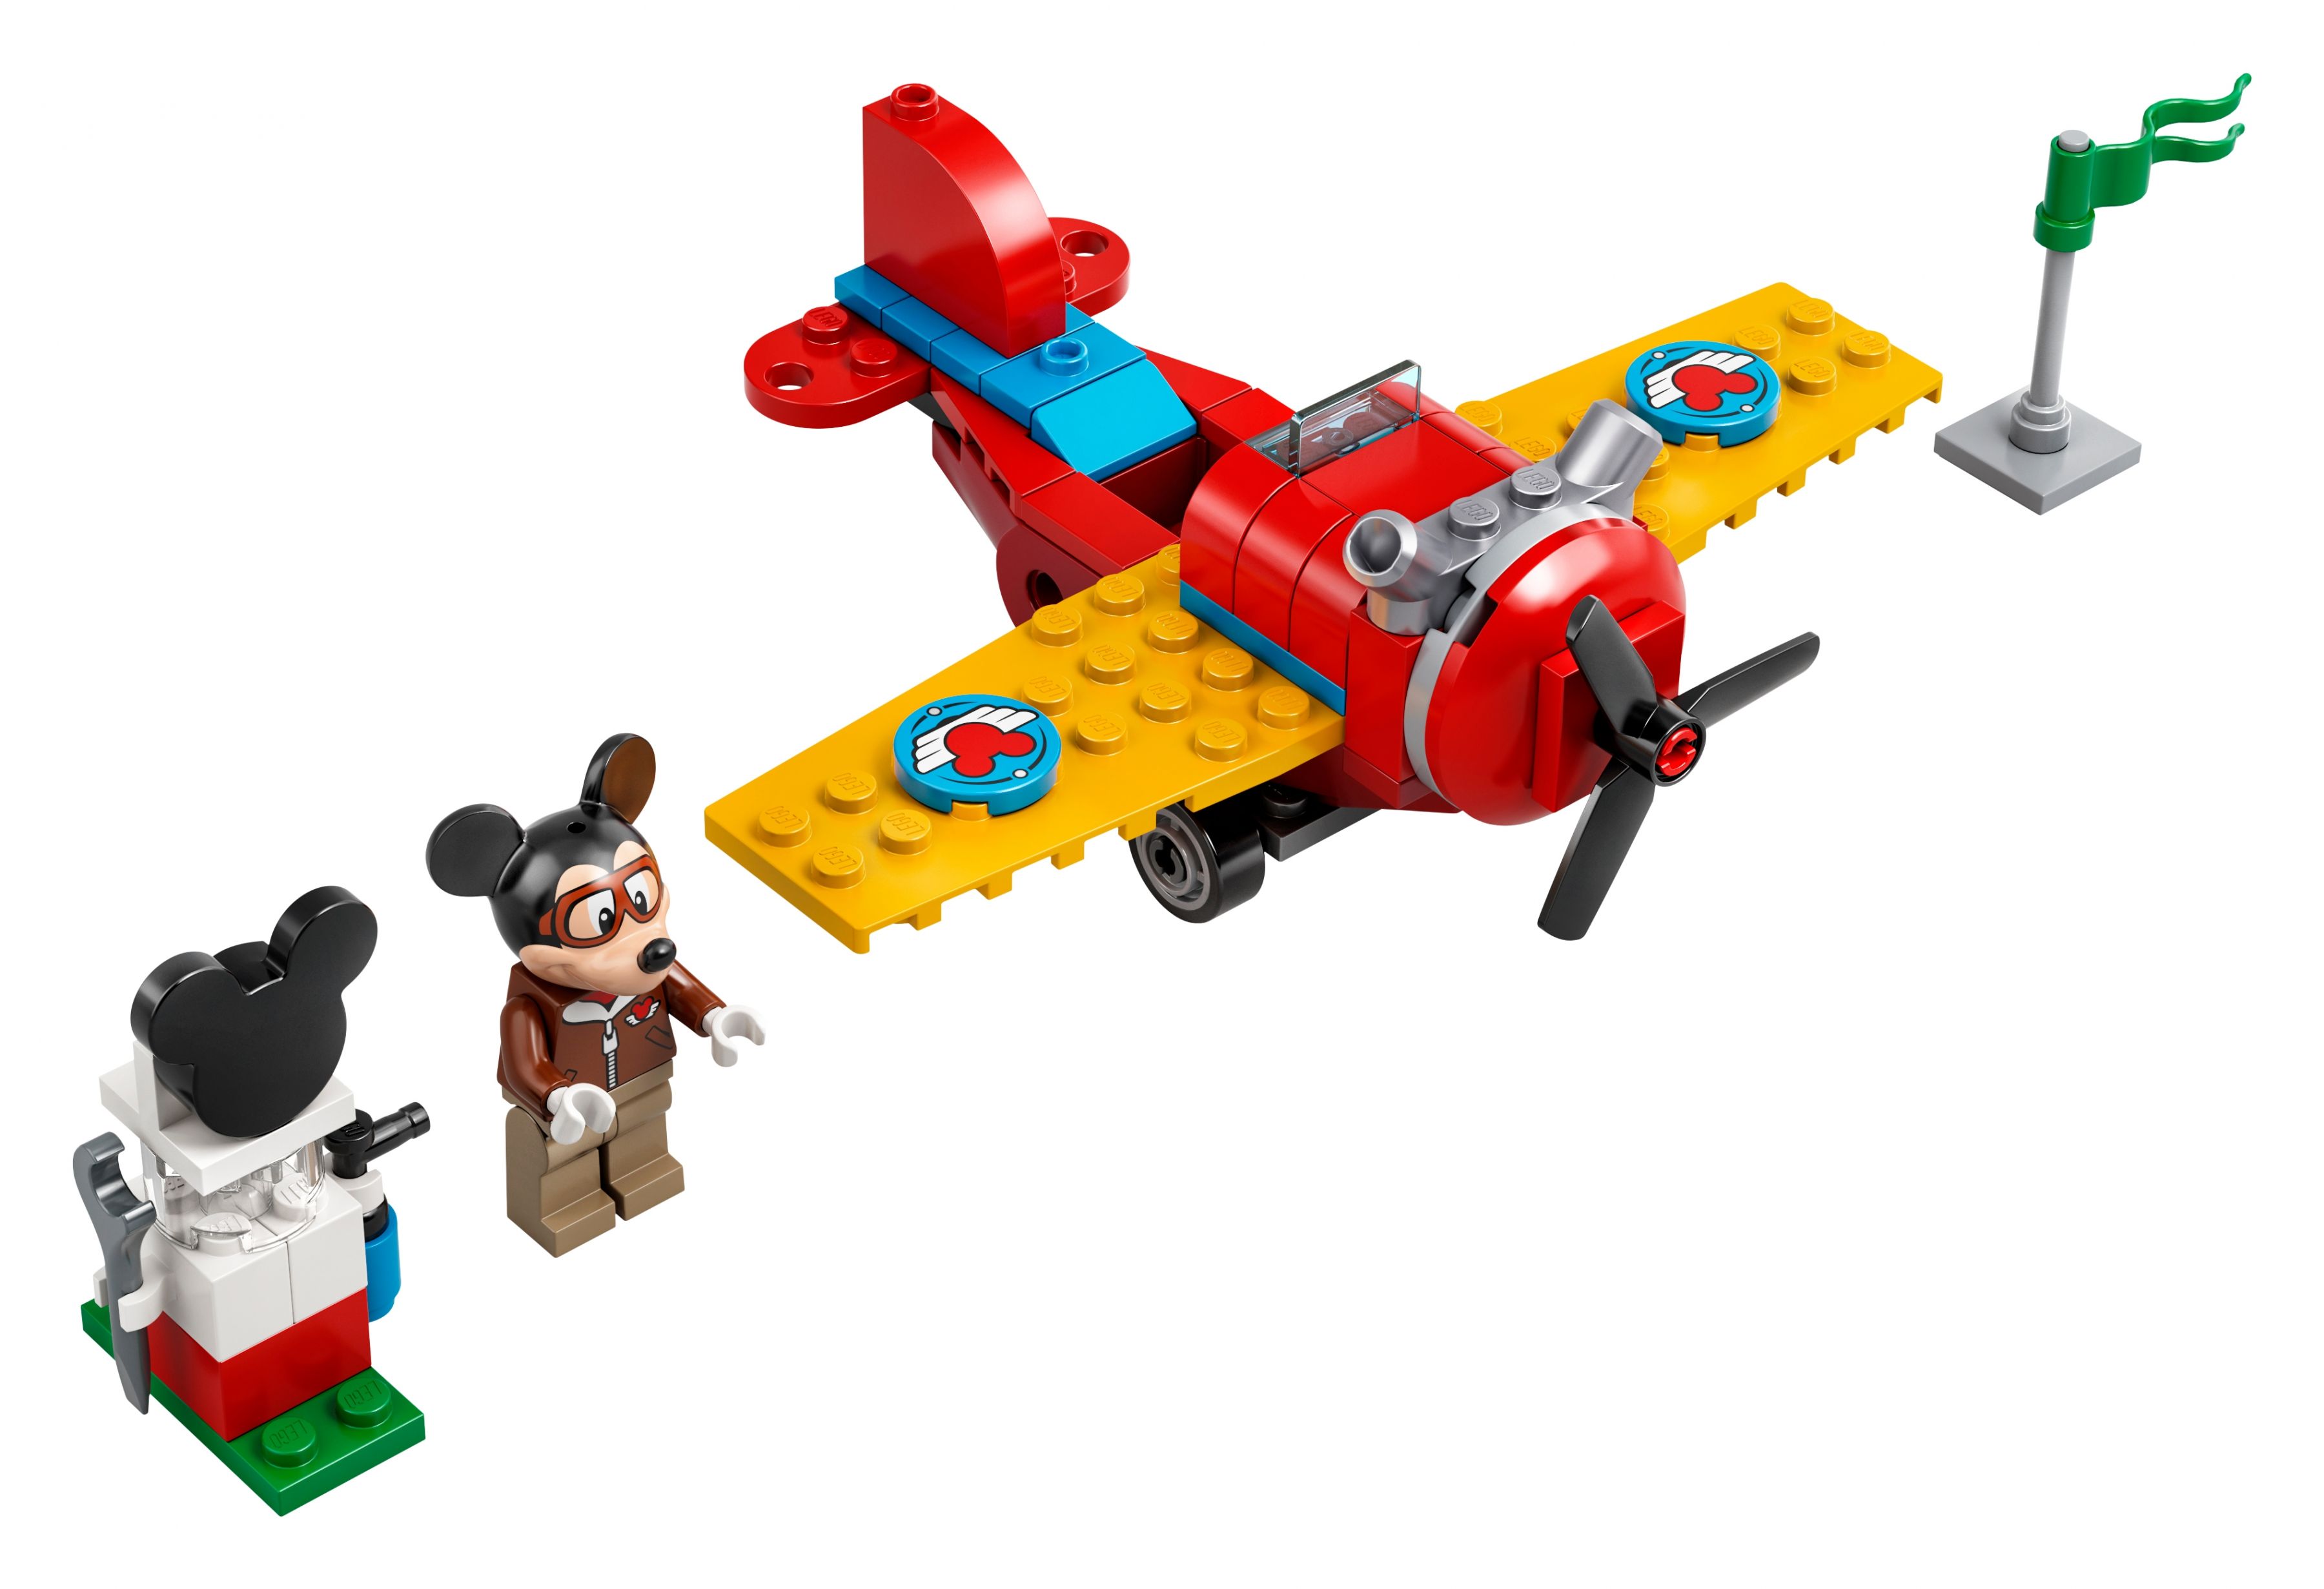 LEGO Disney 10772 Mickys Propellerflugzeug LEGO_10772_alt2.jpg